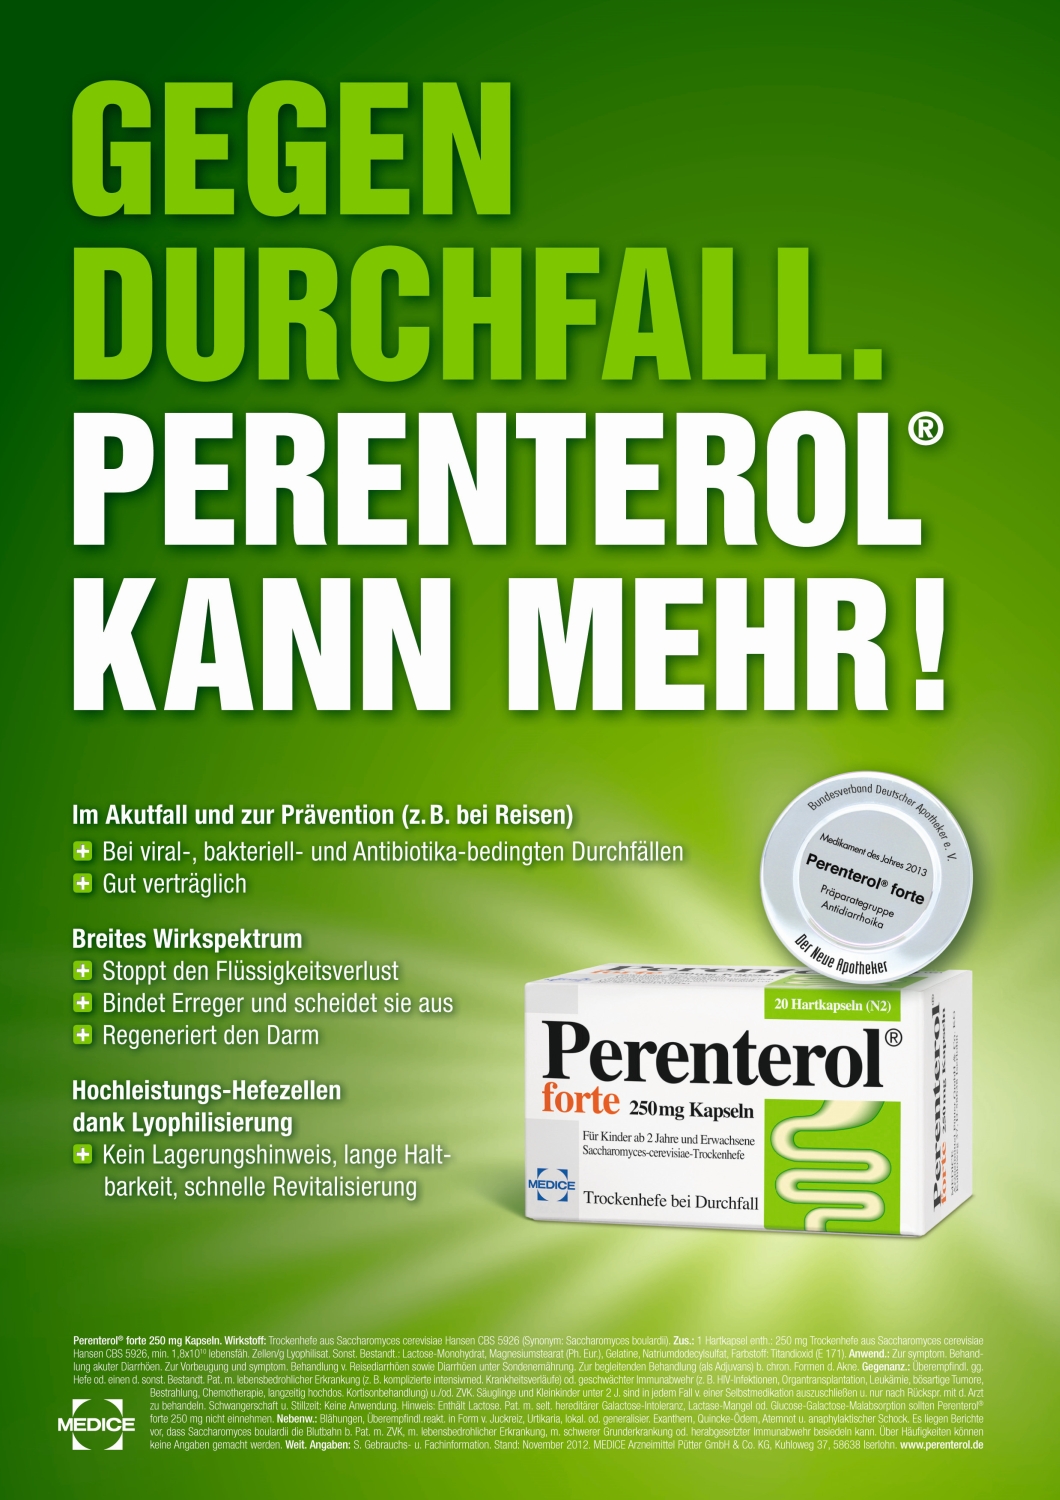 Deutsche-Politik-News.de | Perenterol kann mehr: WEFRA gewinnt weiteren Etat des Pharmaunternehmens MEDICE